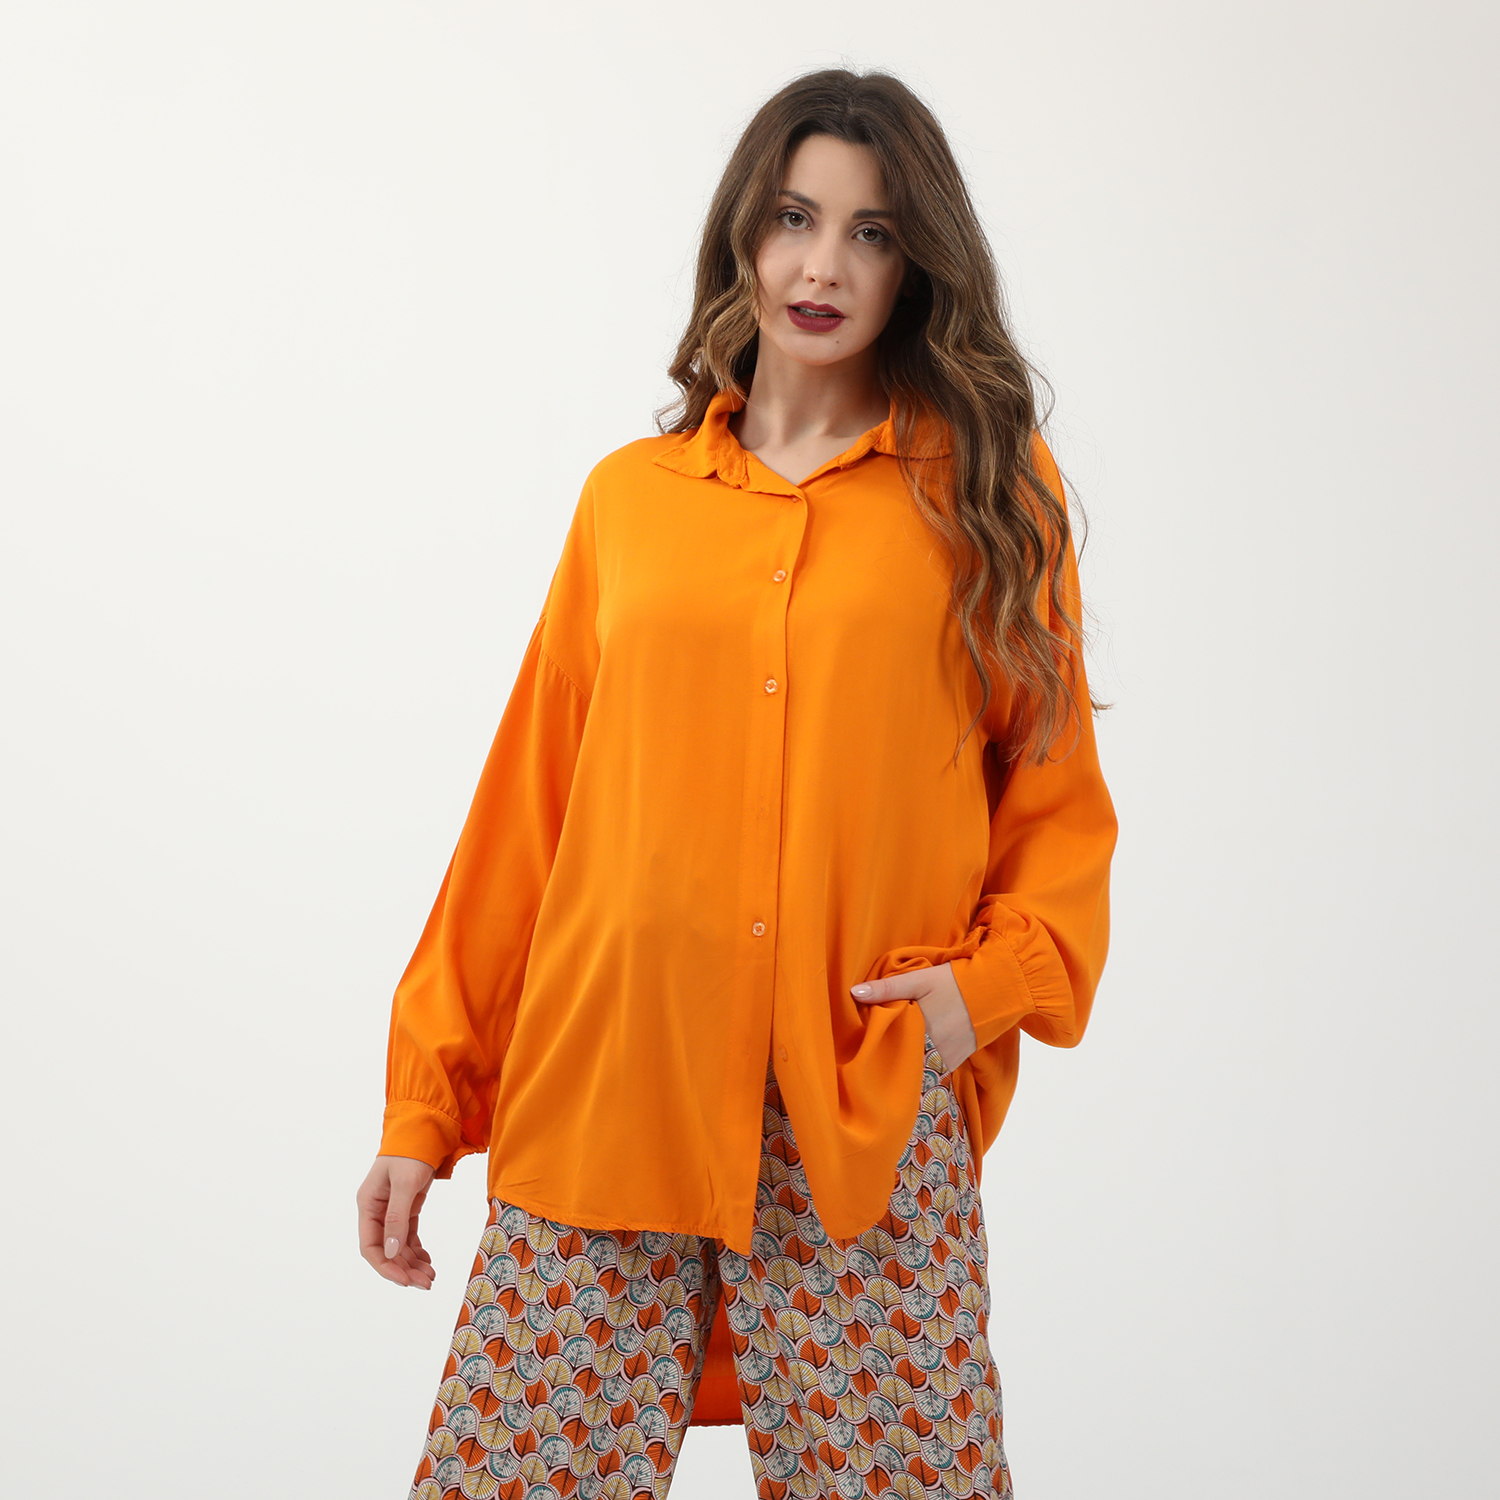 Γυναικεία/Ρούχα/Πουκάμισα/Πουκαμίσες ATTRATTIVO - Γυναικεία μακριά πουκαμίσα ATTRATTIVO πορτοκαλί